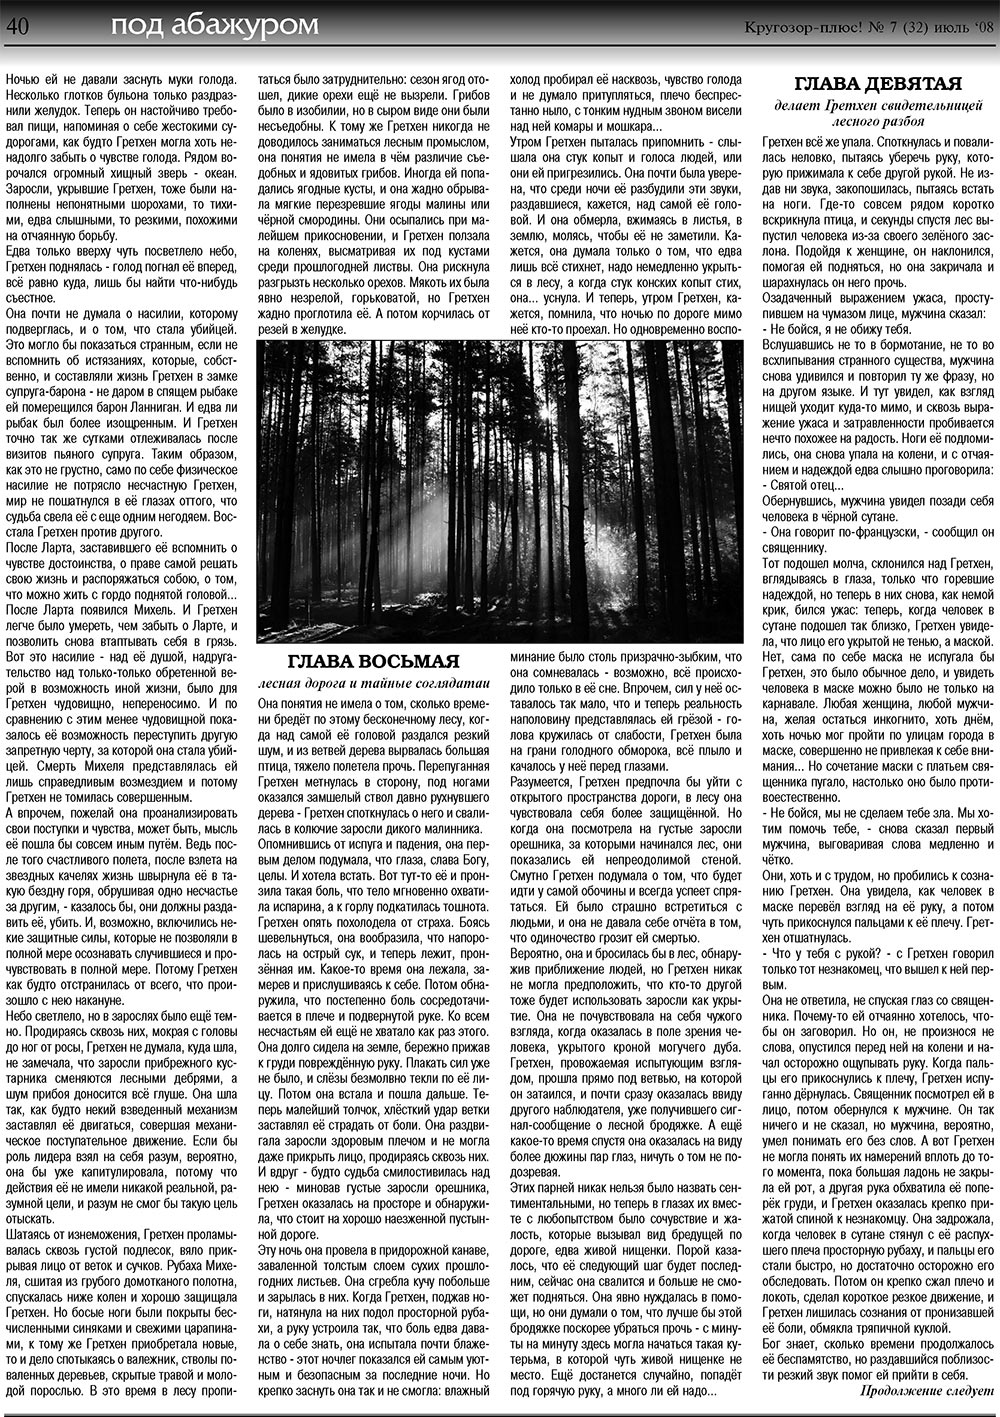 Кругозор плюс!, газета. 2008 №7 стр.40